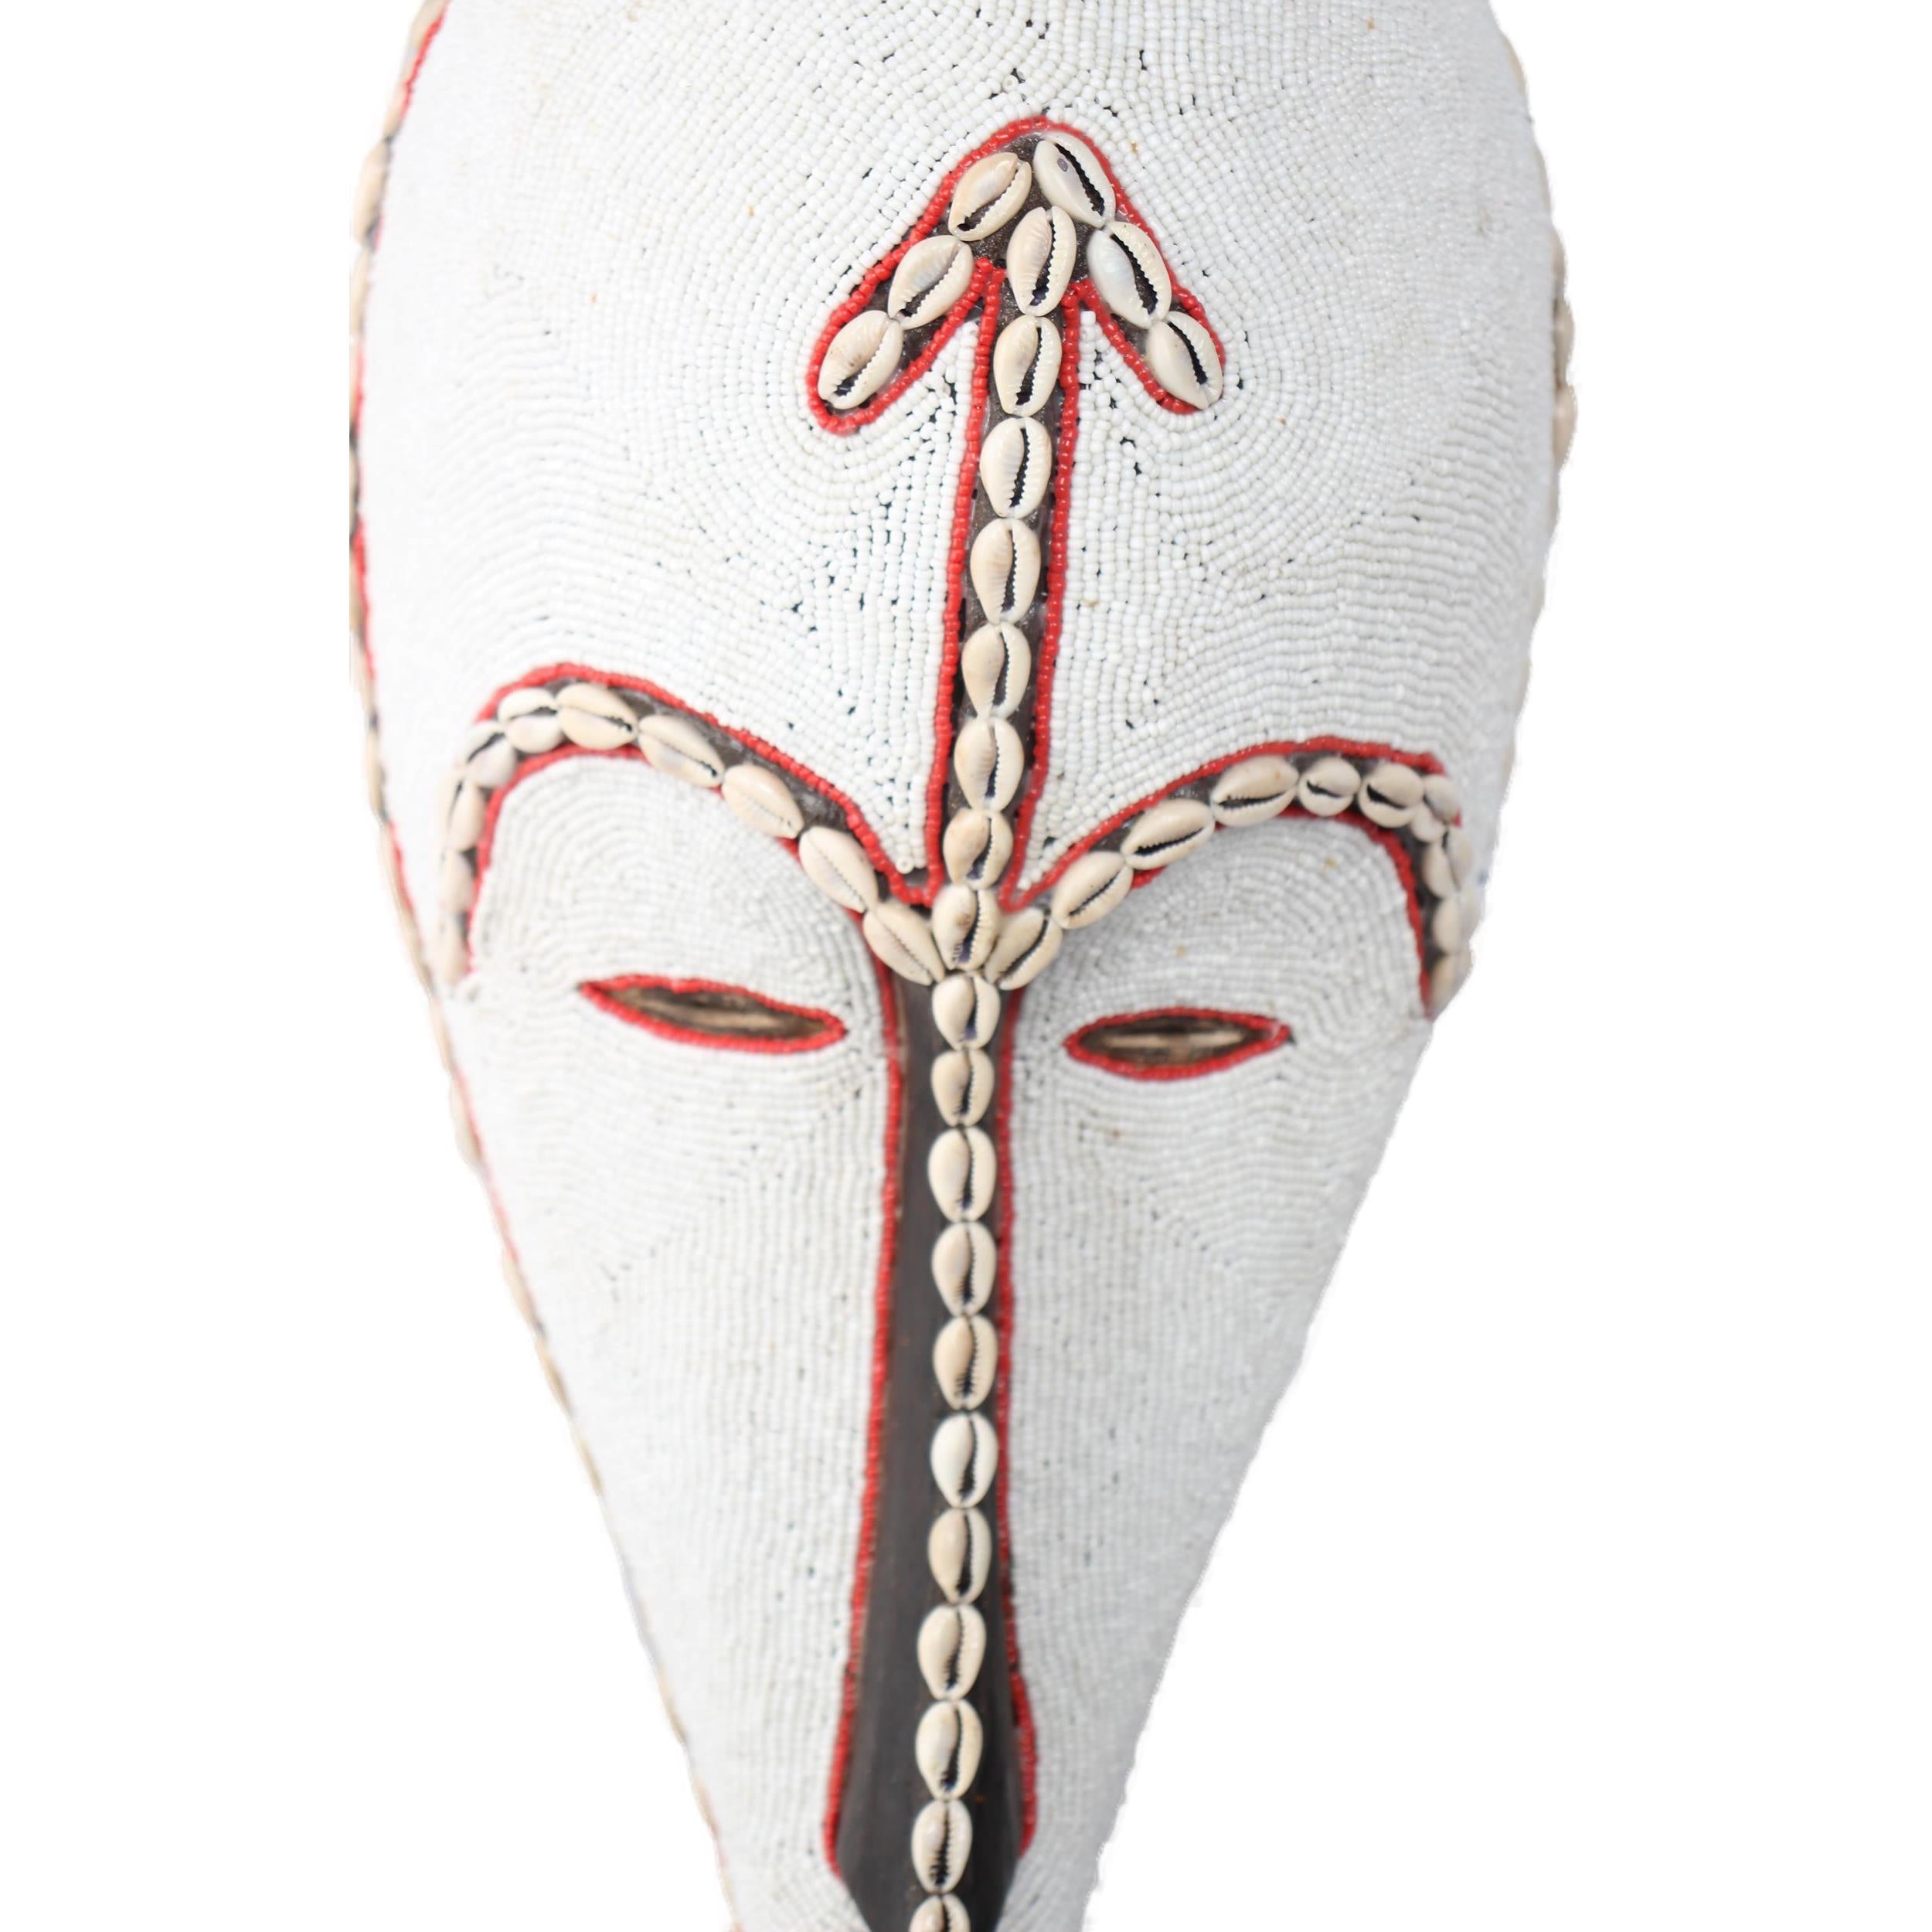 Fang Tribe Mask ~18.5" Tall - Mask